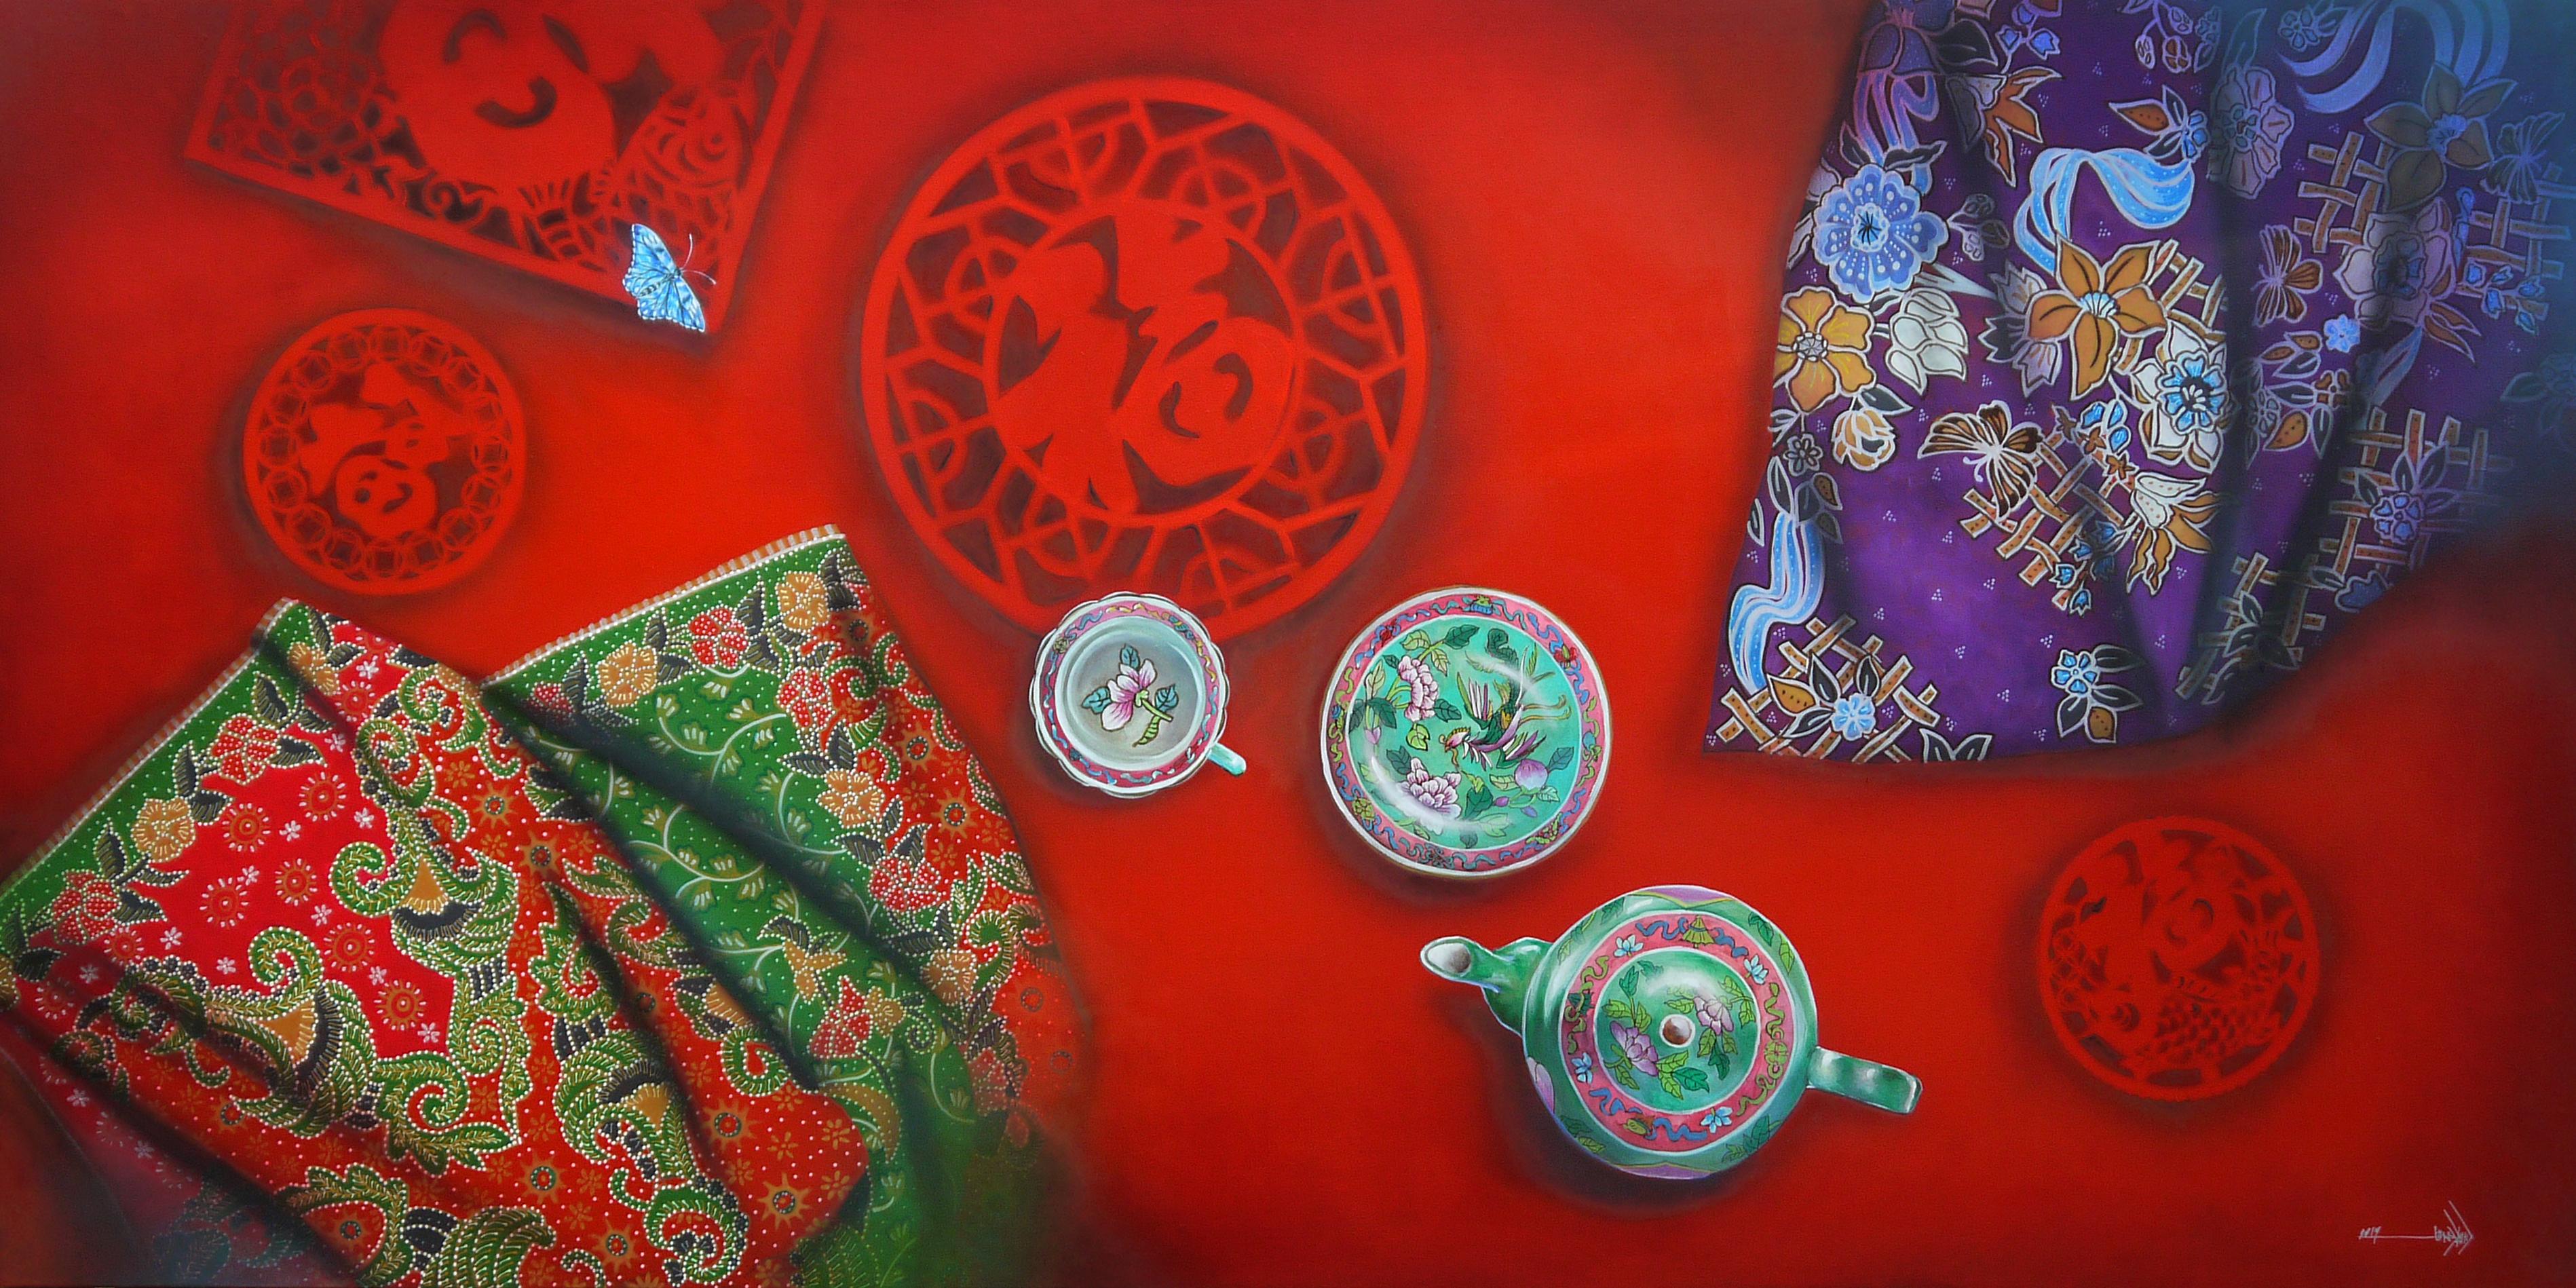 Tony Ng Still-Life Painting - Memory Of Peranakan Baba Nyonya Painting Floral Pattern Batik Painted on Canvas